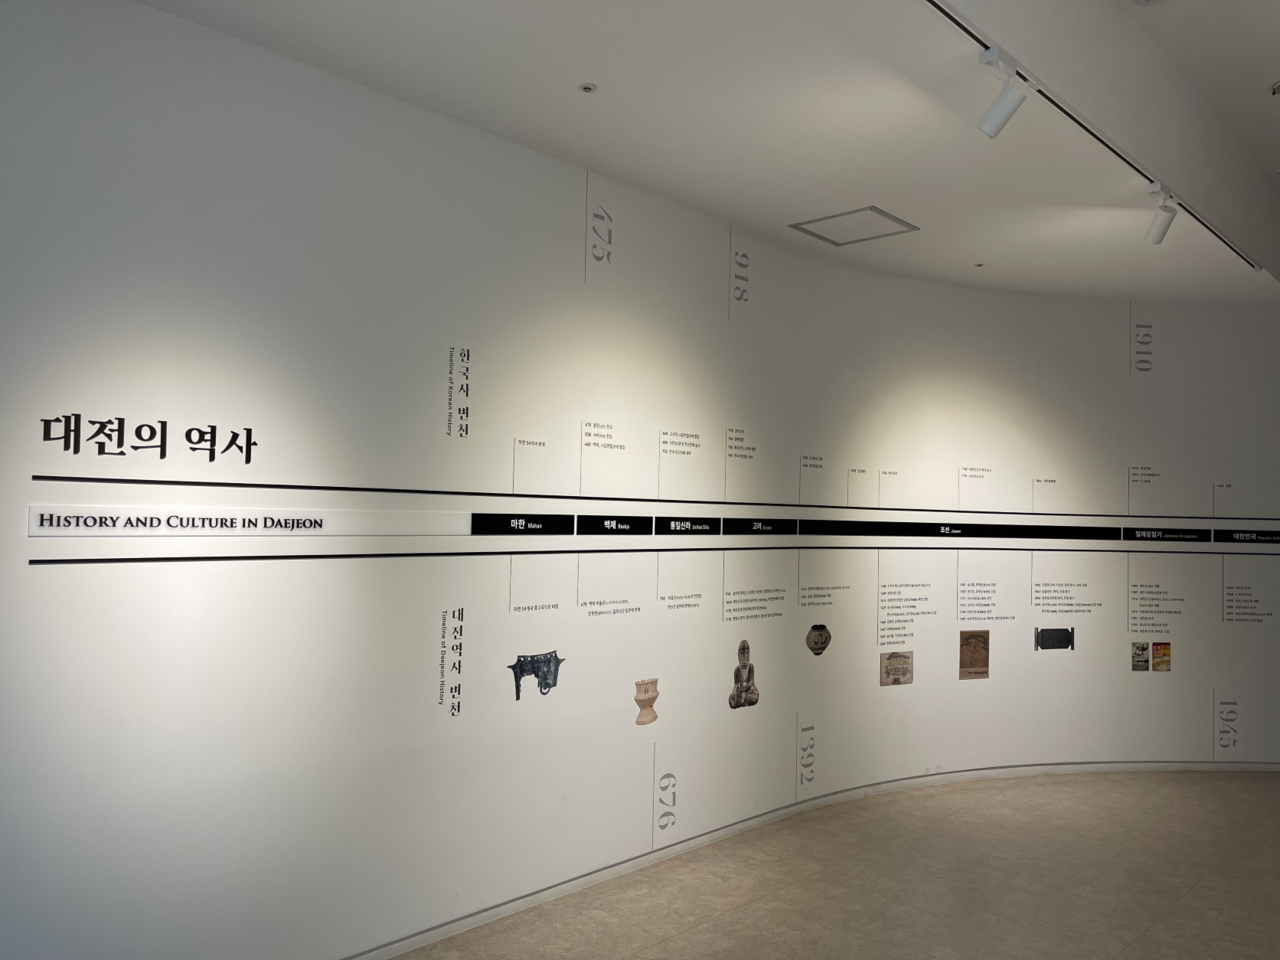 전시회 입구에 있는 대전의 역사 타임라인, 한국사와 대전역사 변천이 함께 정리되어 있다.